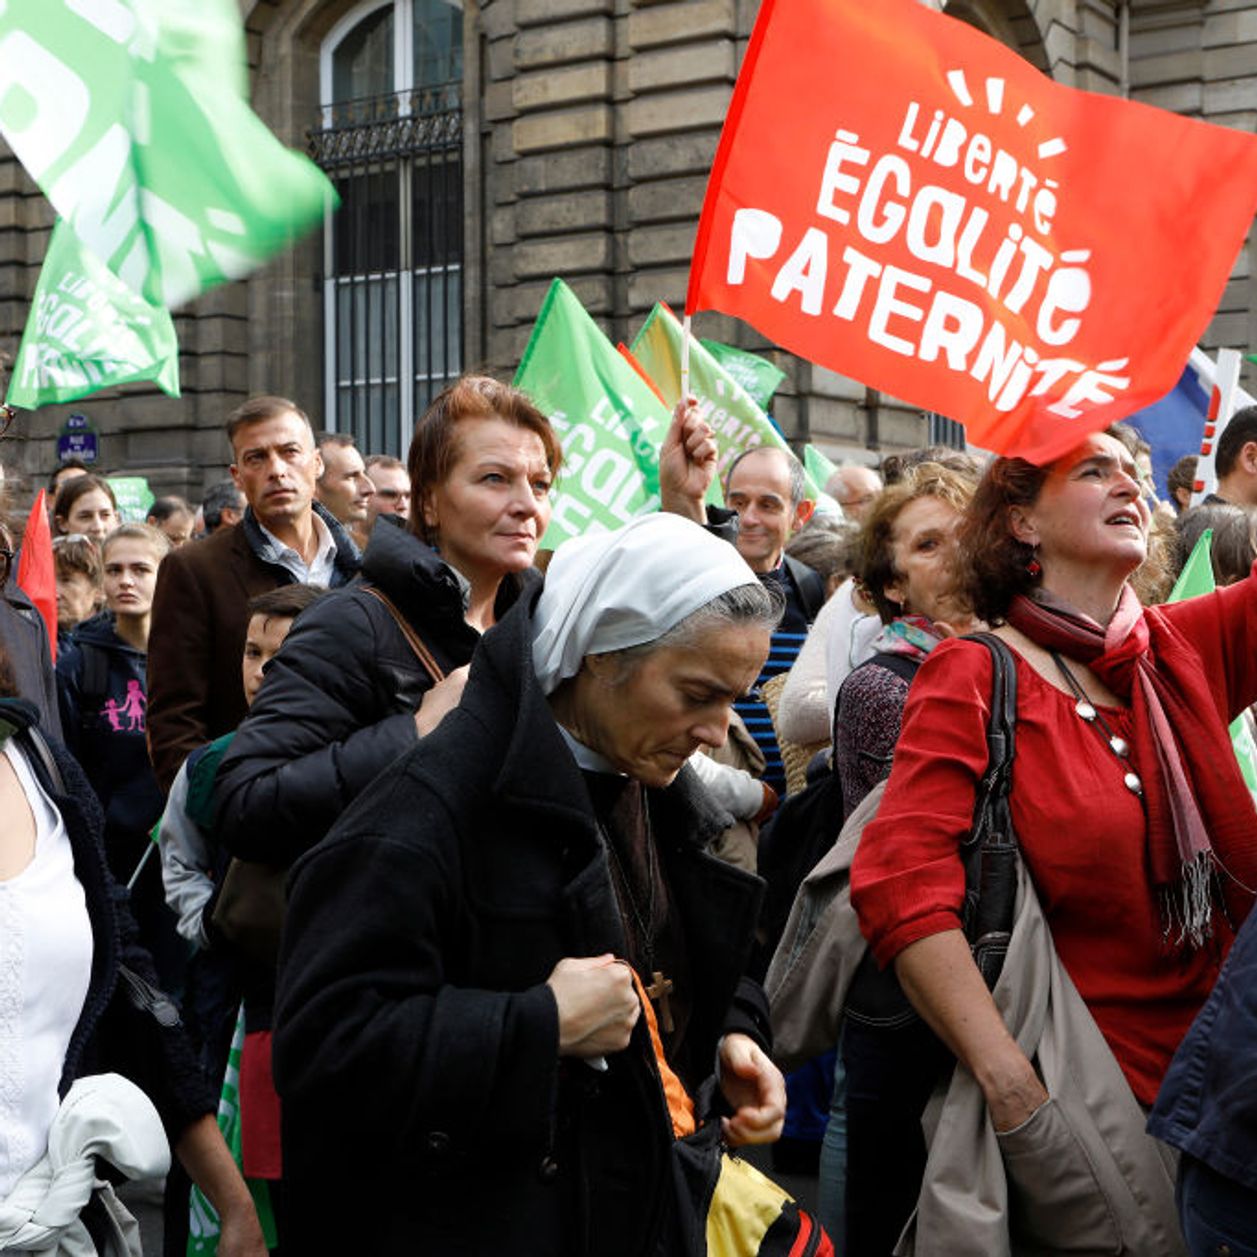 Les militants anti-PMA manifestent à Paris contre la loi bioéthique